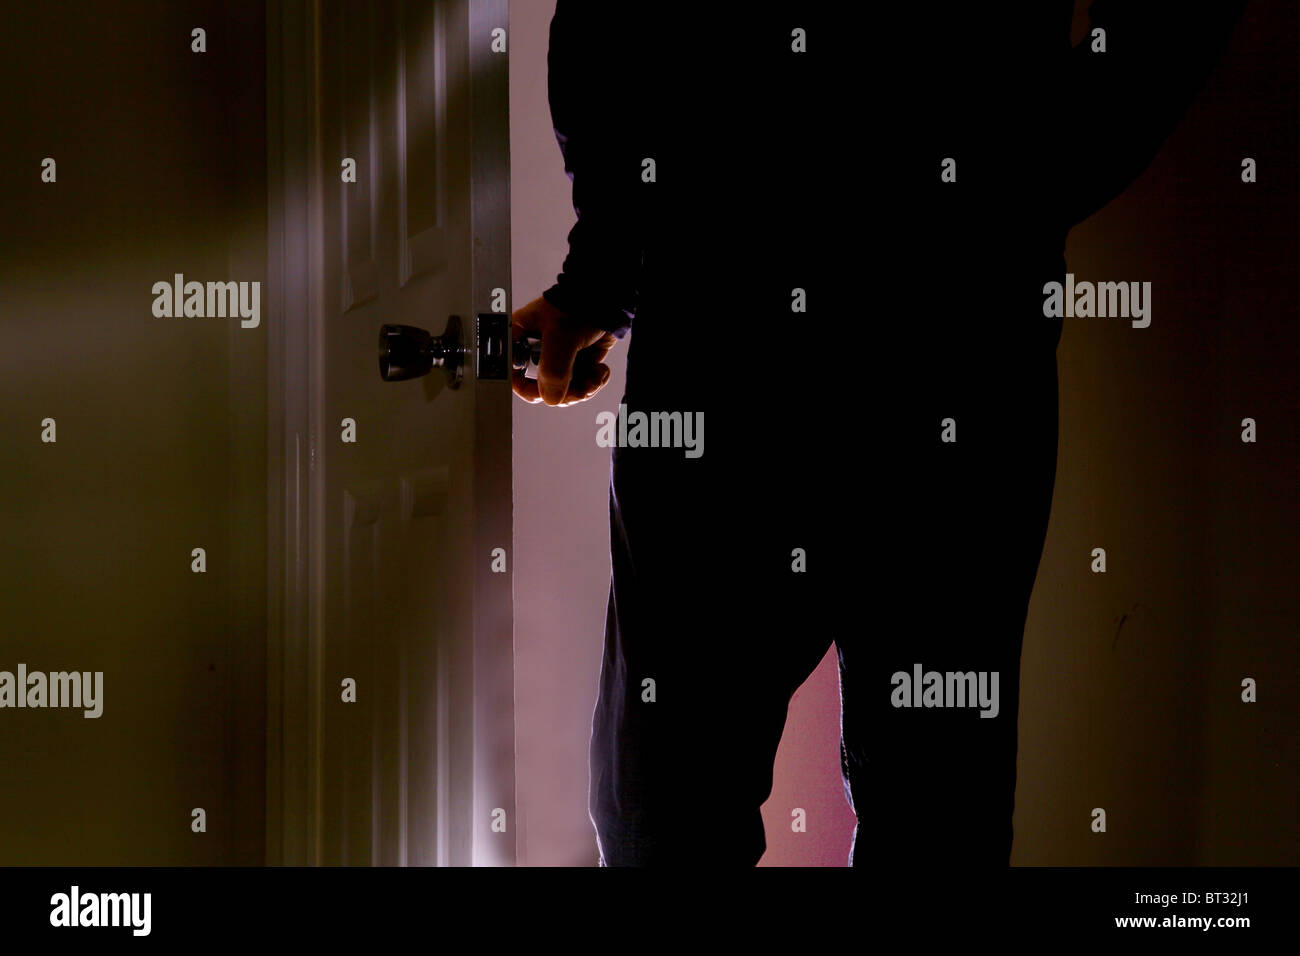 L'uomo ruotando la maniglia di apertura di una porta di entrare in una stanza buia Foto Stock